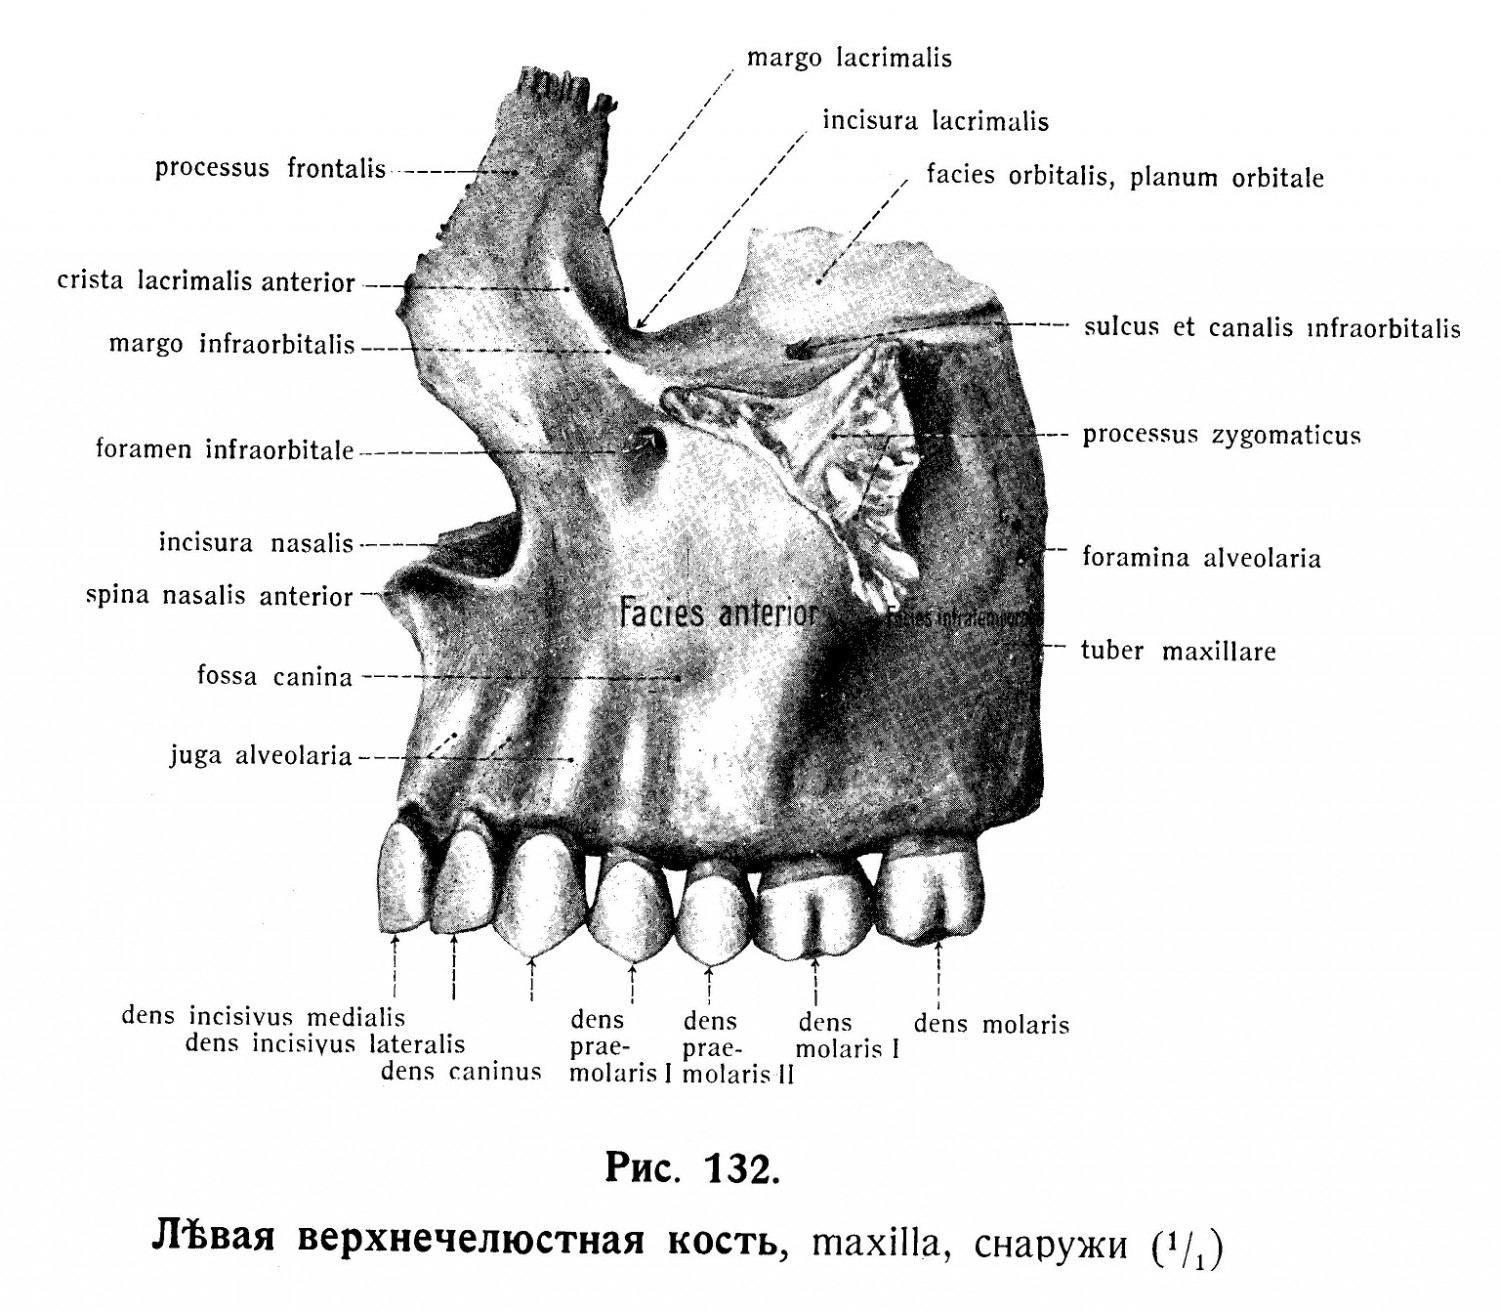 Верхнечелюстная кость, maxilla